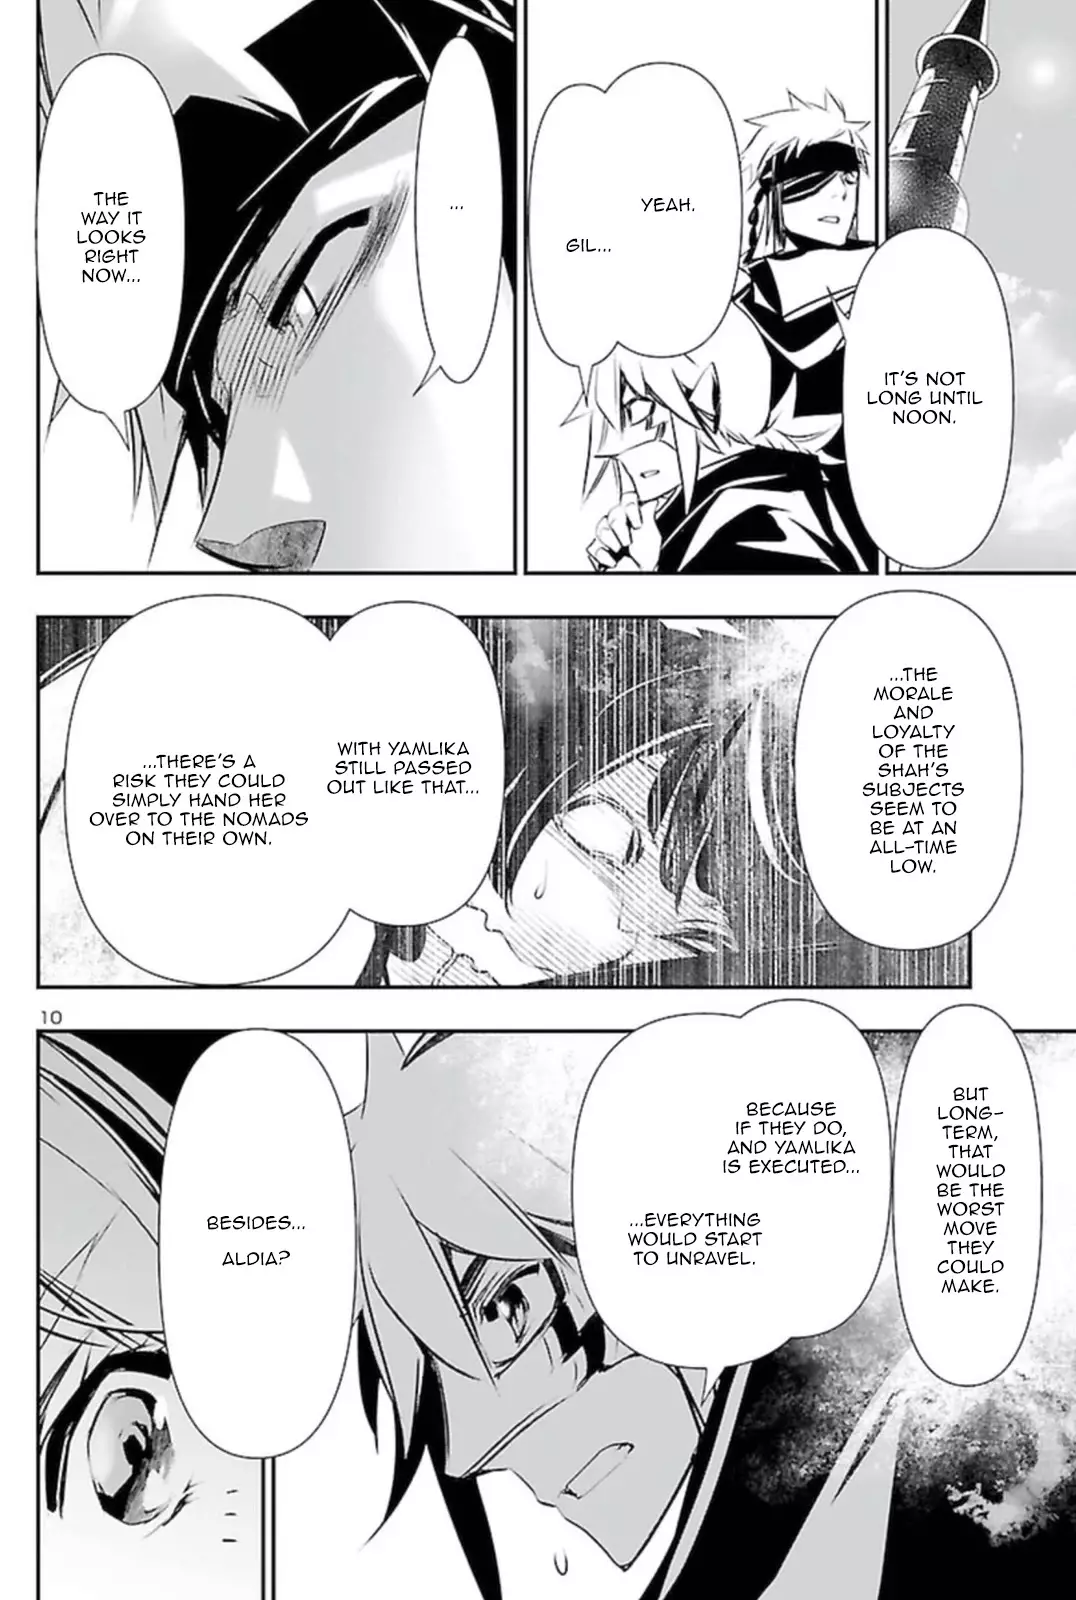 Shinju no Nectar - 62 page 9-9fc3f736